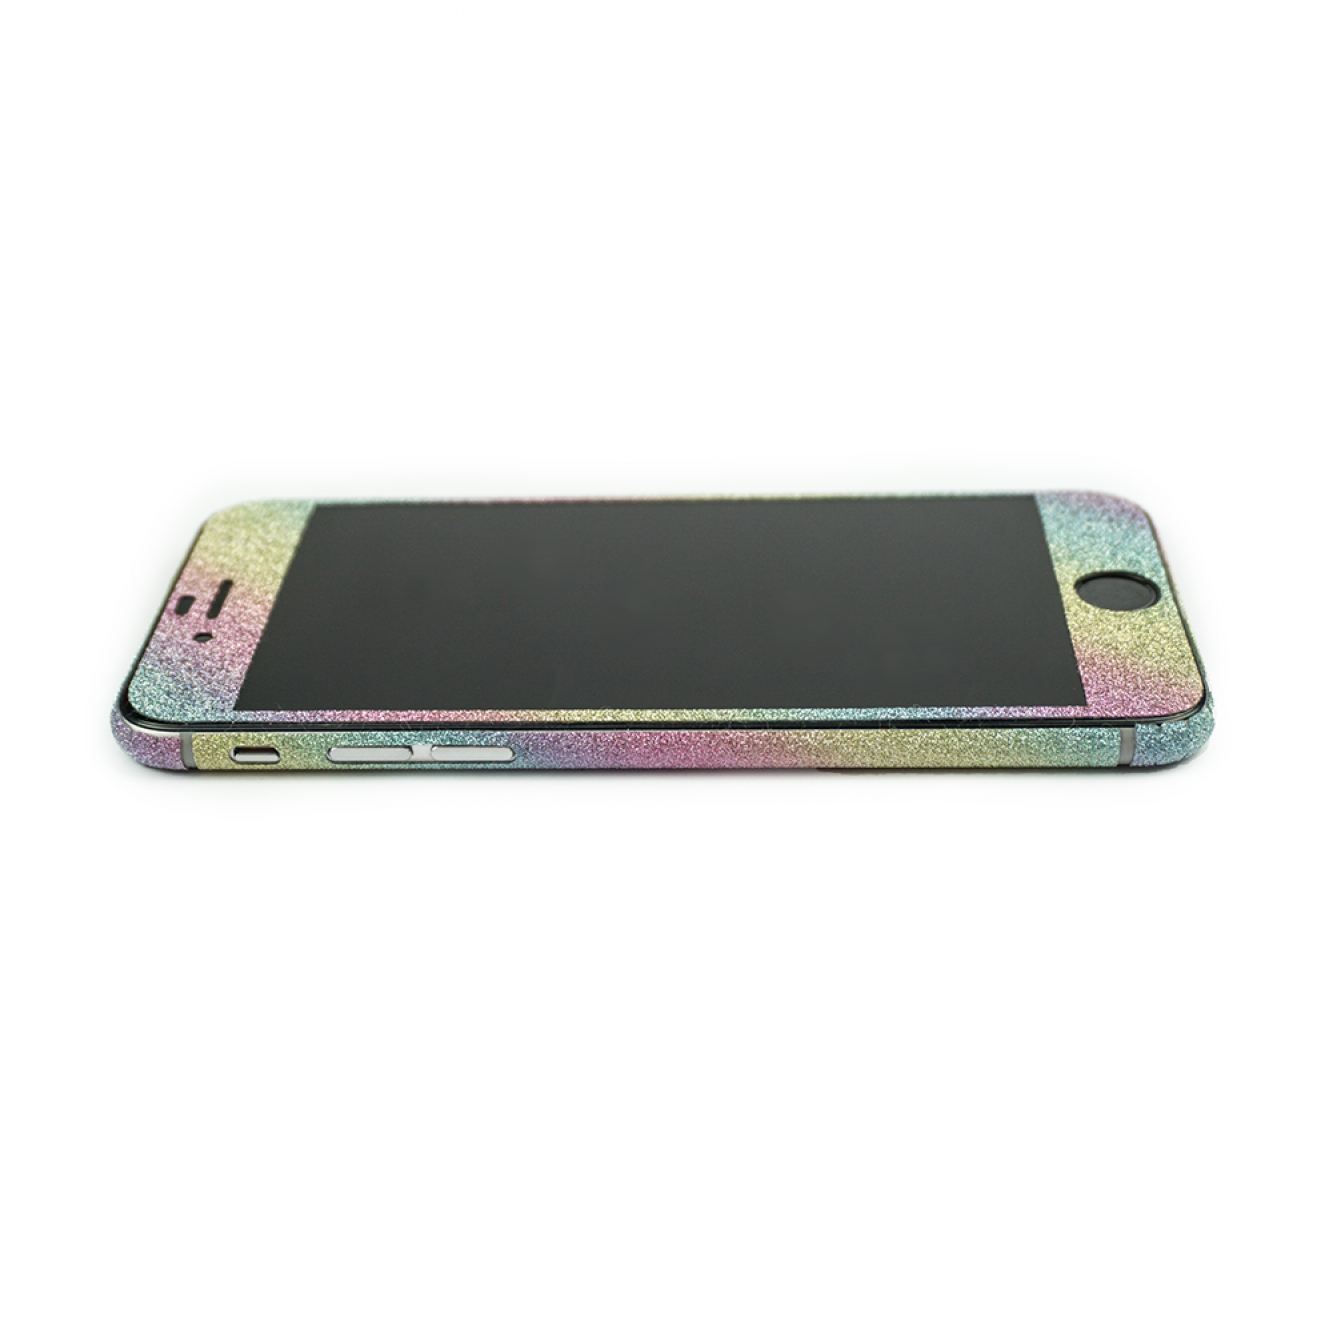 Glitzerfolie für iPhone 6 / 6s Skin Folie Schutzfolie Aufkleber Regenbogen